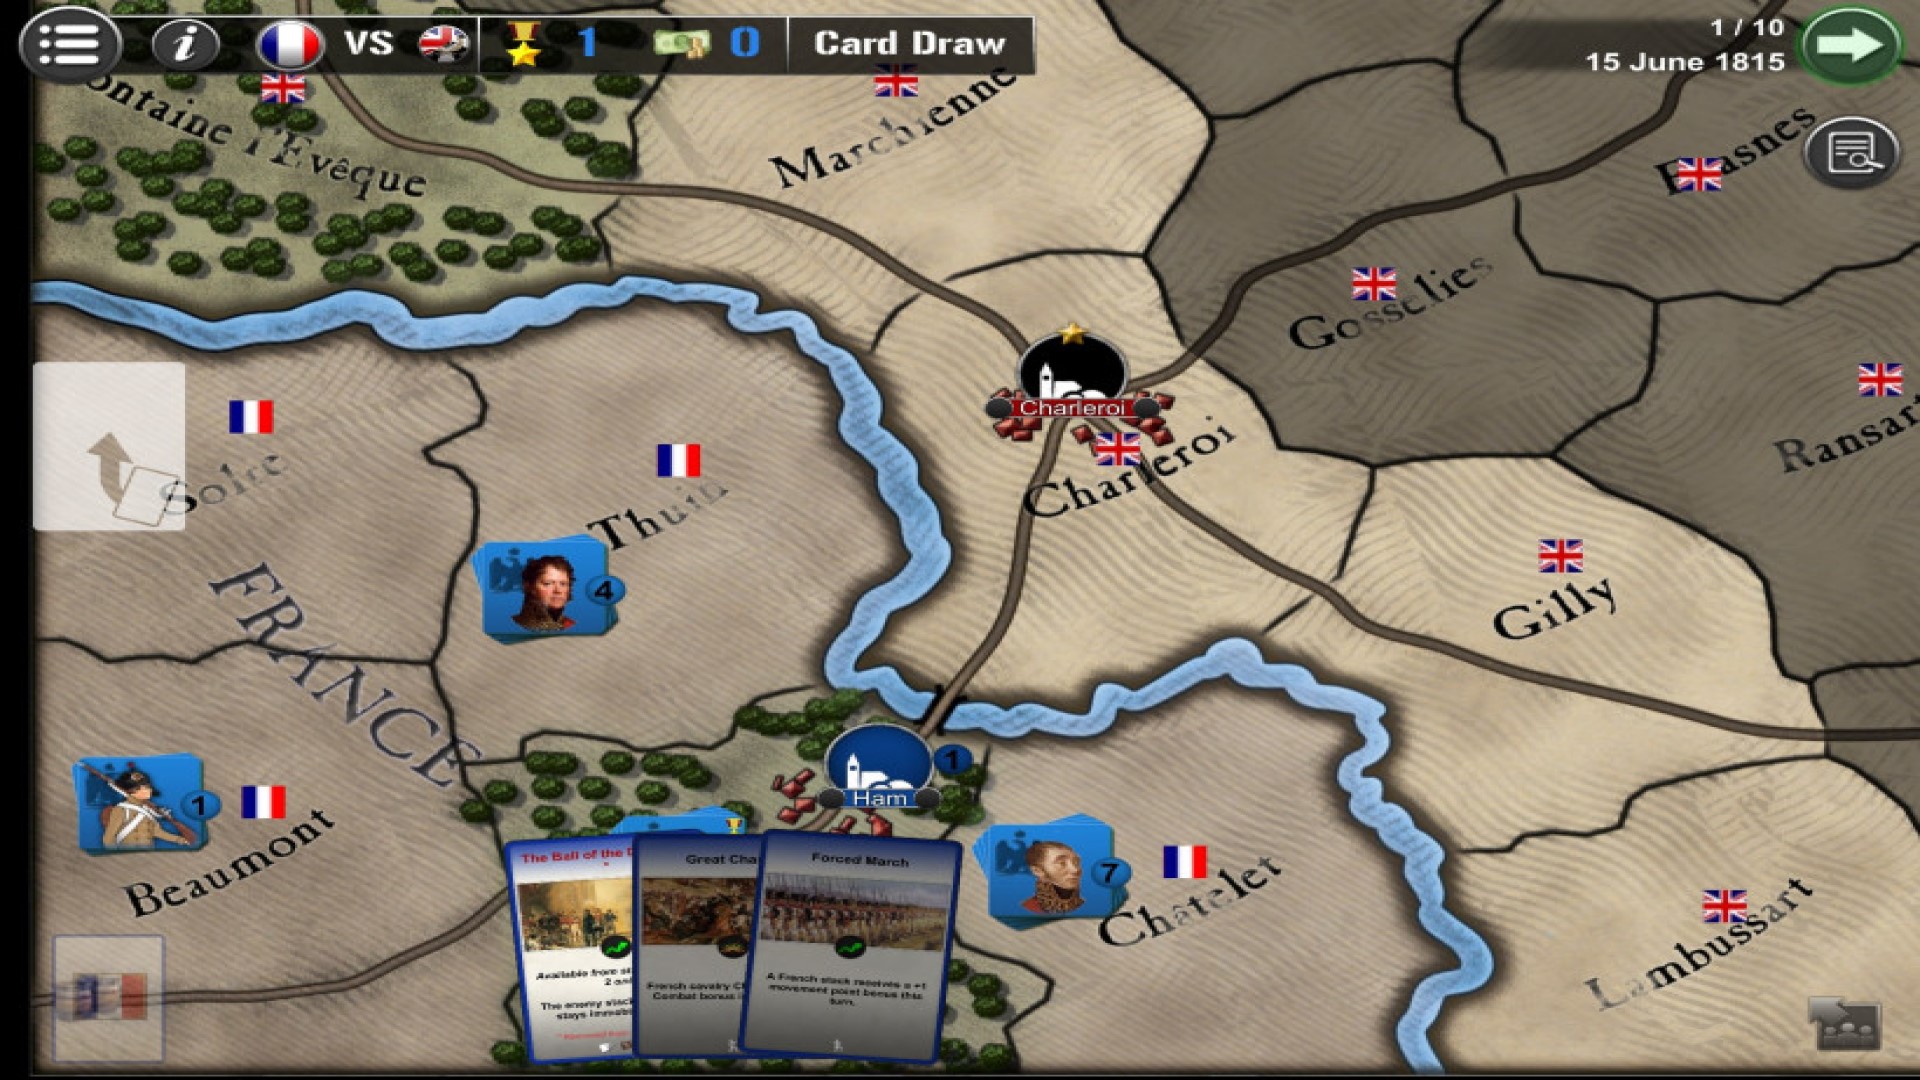 بهترین بازی های جنگی موبایل: جنگ در سراسر جهان. تصویر نقشه ای از بخشی از انگلیس را نشان می دهد ، در حالی که بازیکن چندین کارت را در اختیار دارد که گزینه ها را ارائه می دهد